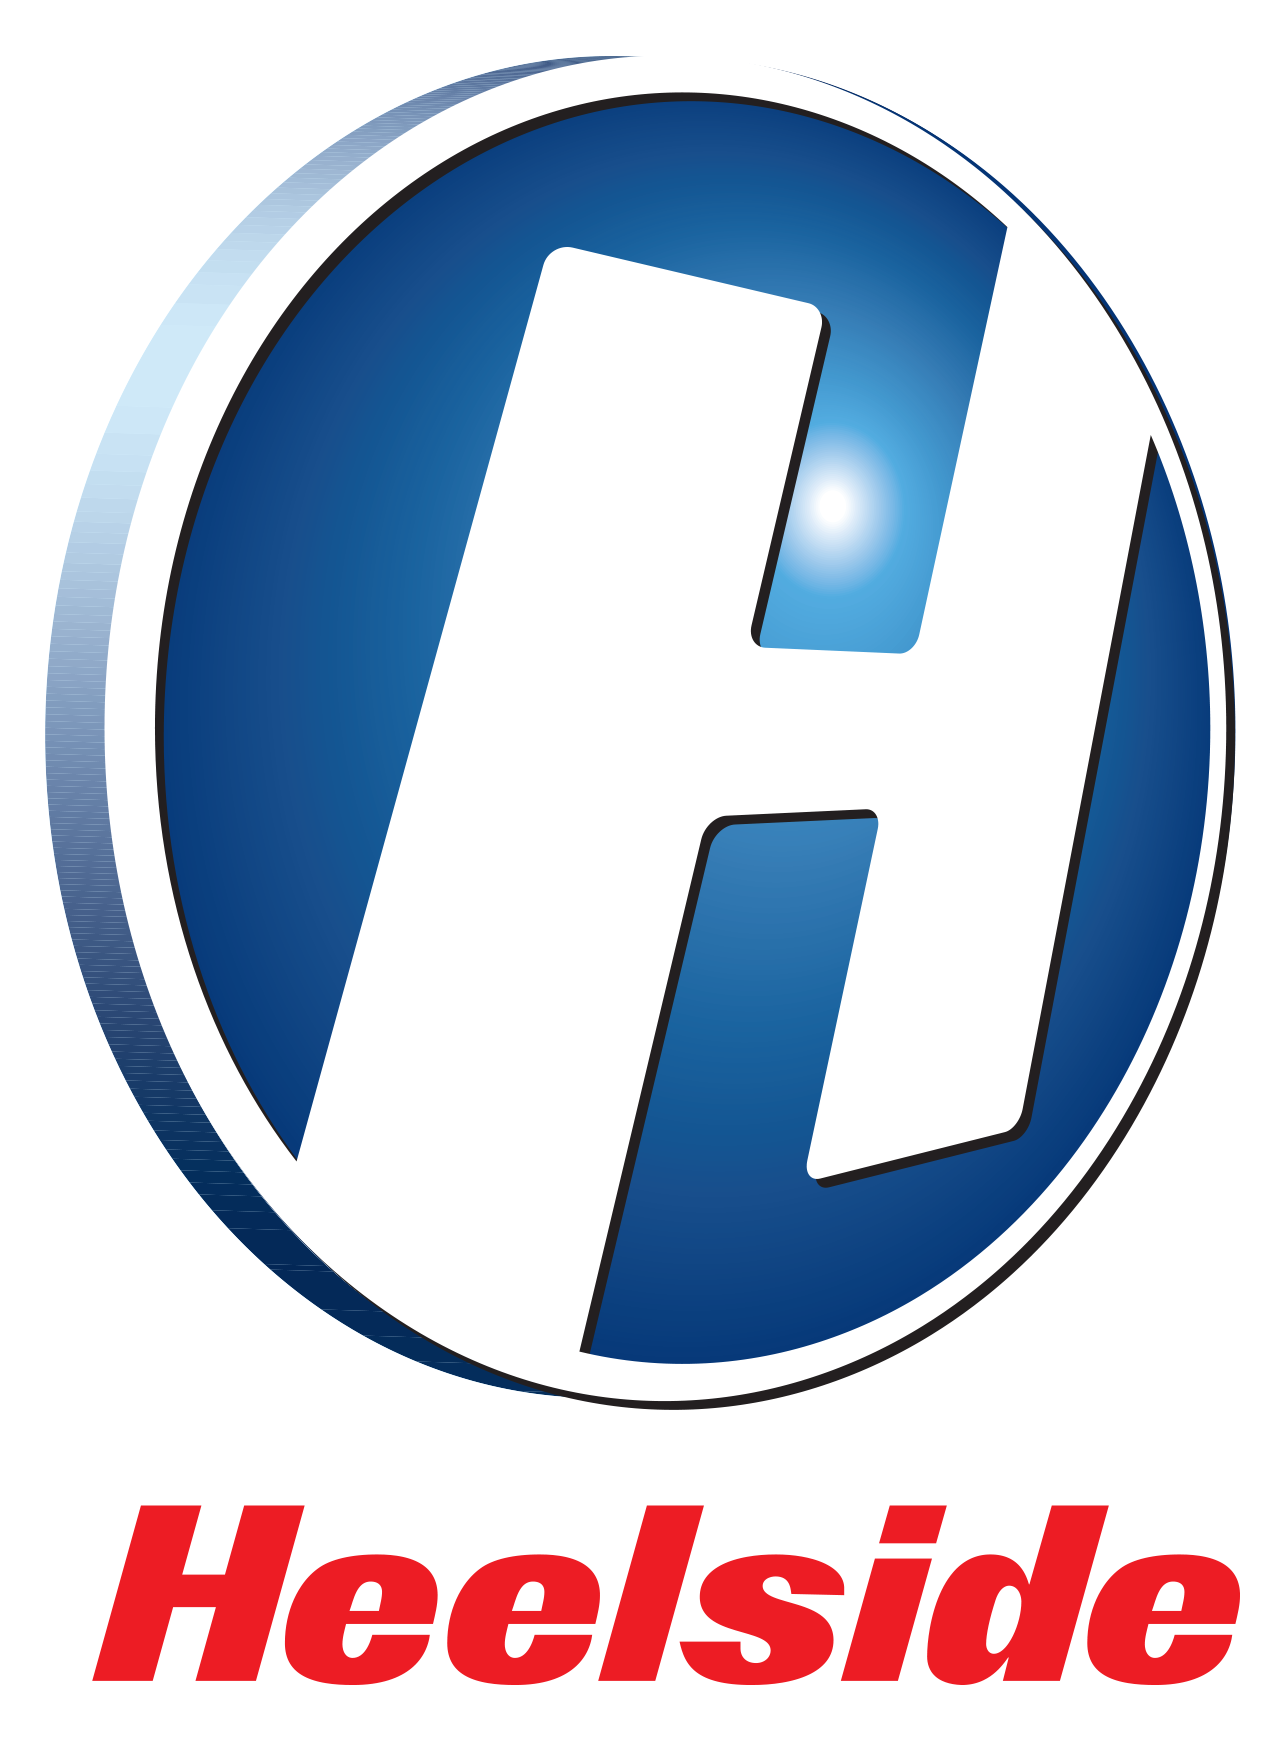 Heelside logo